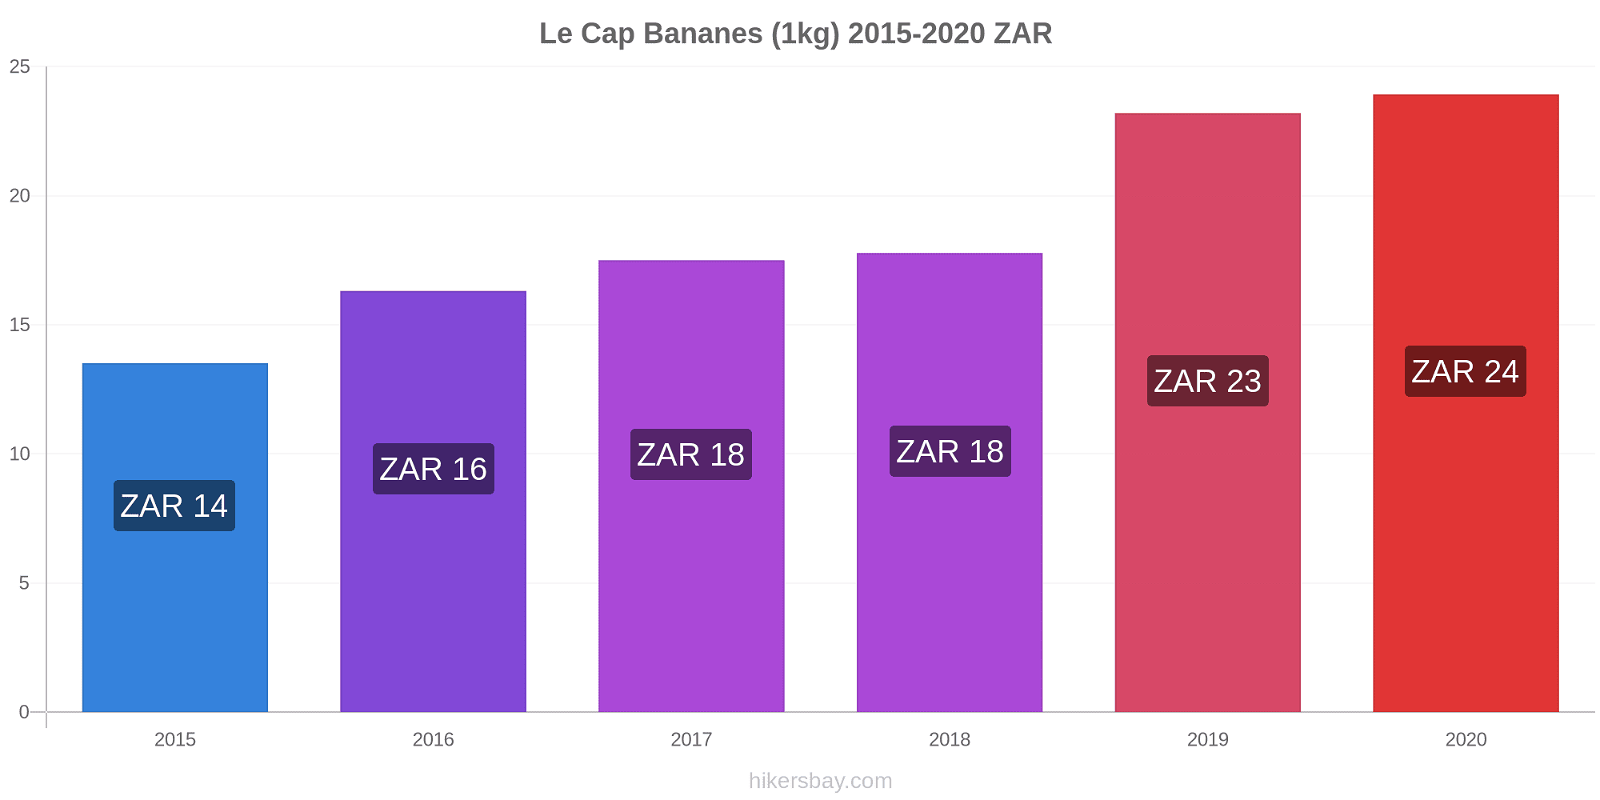 Le Cap changements de prix Bananes (1kg) hikersbay.com